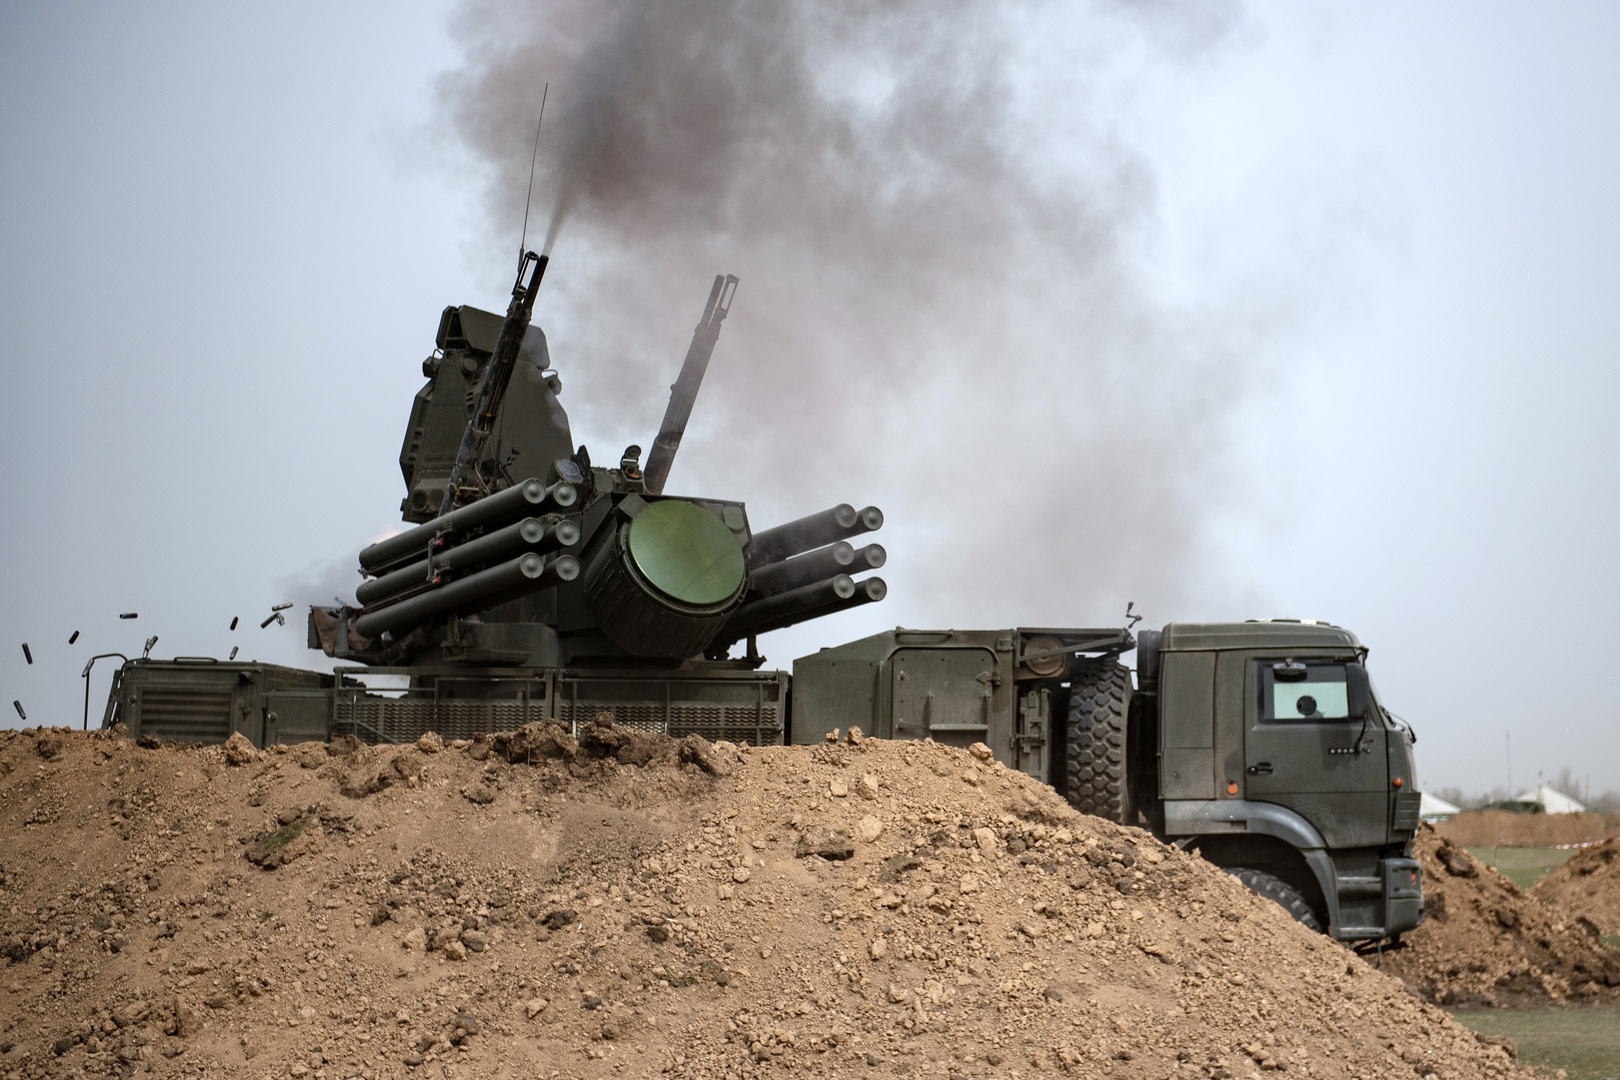 الدفاع الروسية: الدفاعات الجوية السورية أسقطت صاروخين و7 قذائف إسرائيلية موجهة